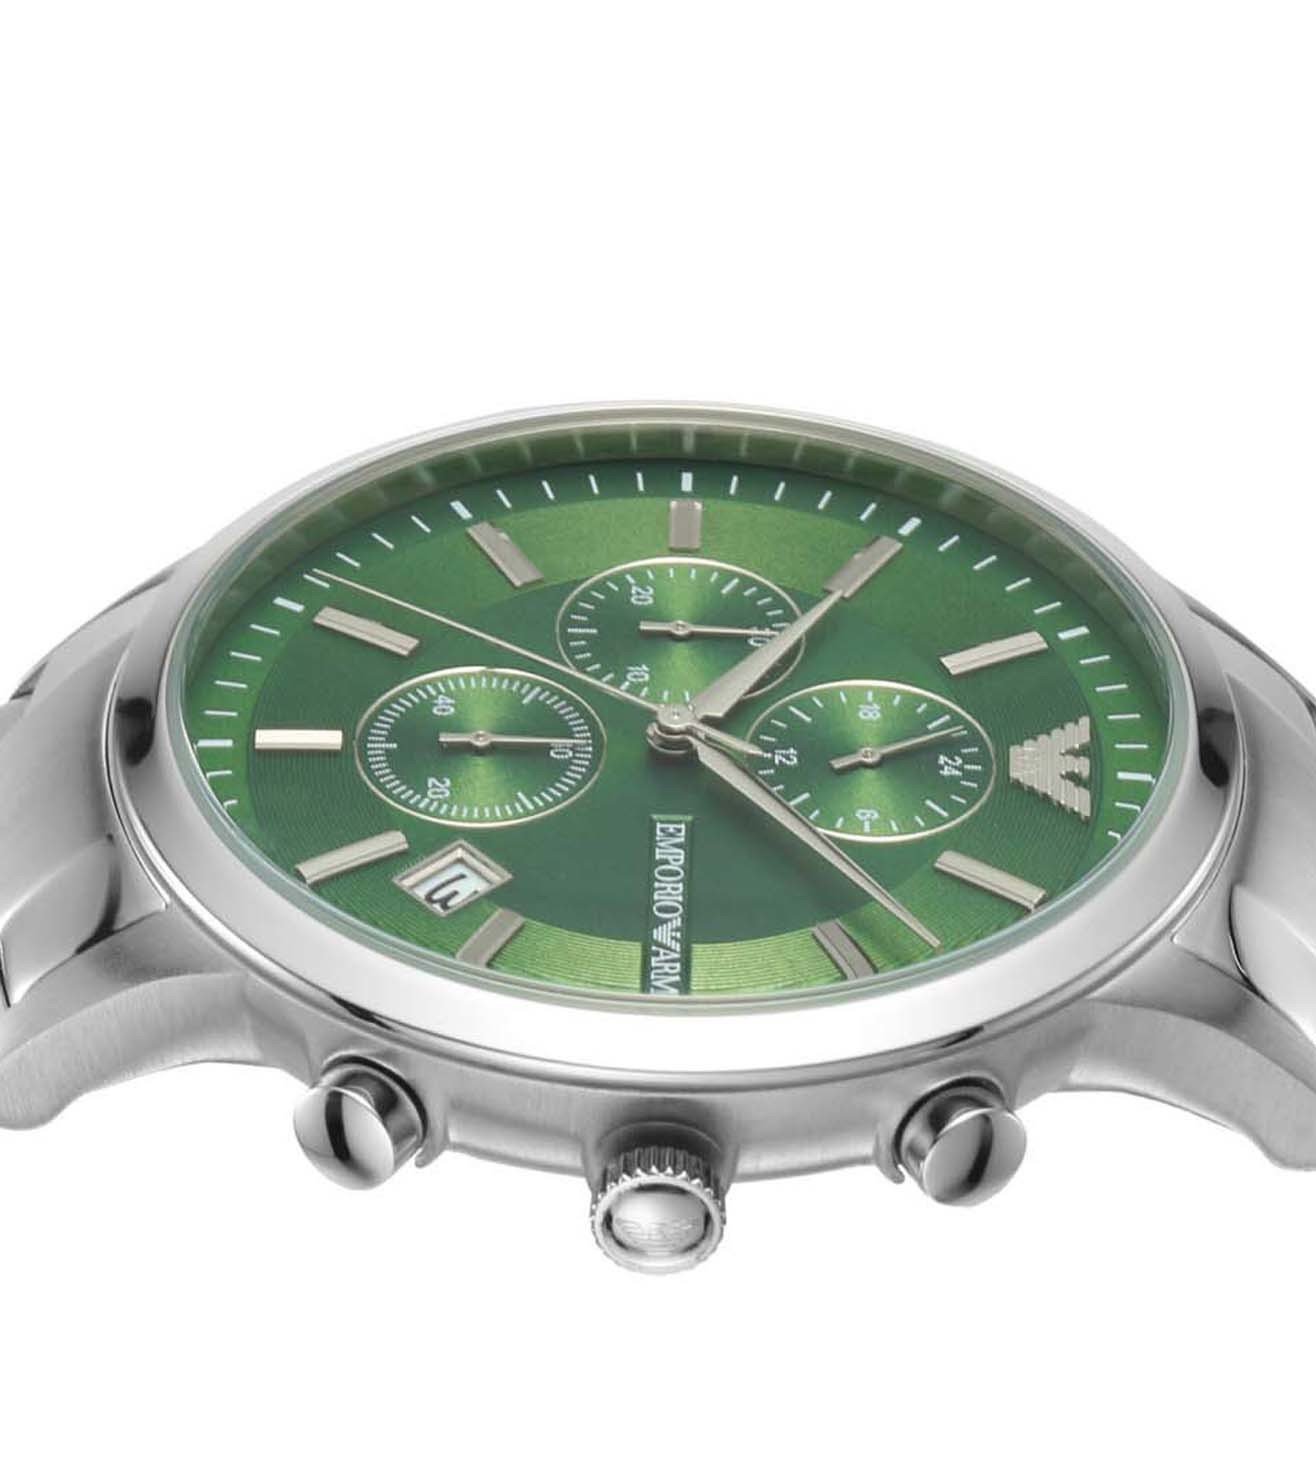 AR11507 | Emporio Armani Multifunction Watch for Men